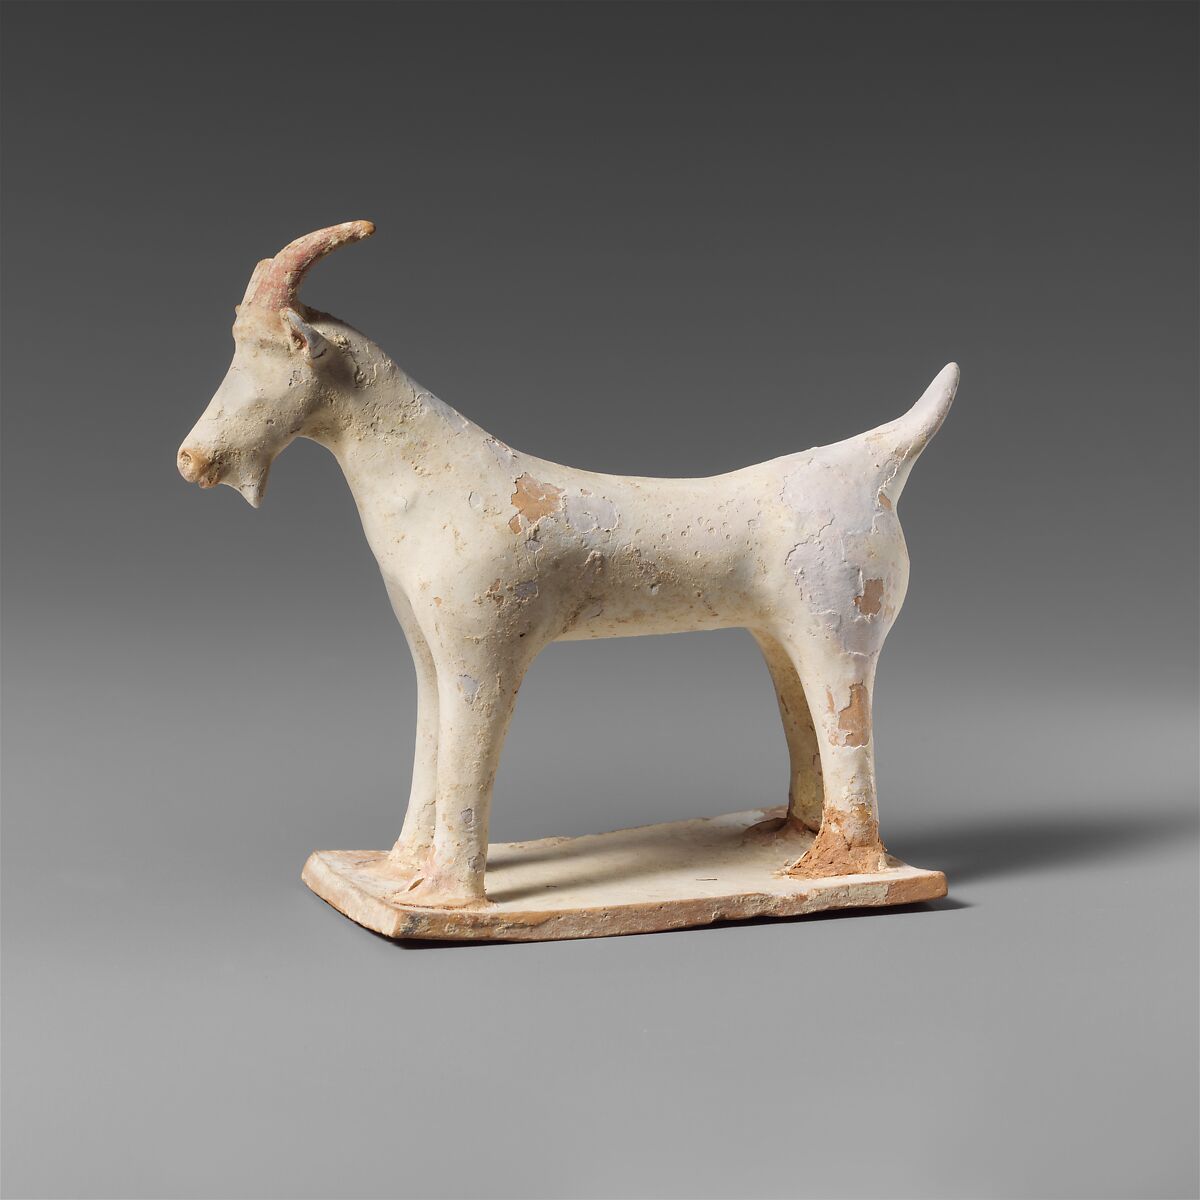 Terracotta statuette of a goat, Terracotta, Greek, Boeotian 